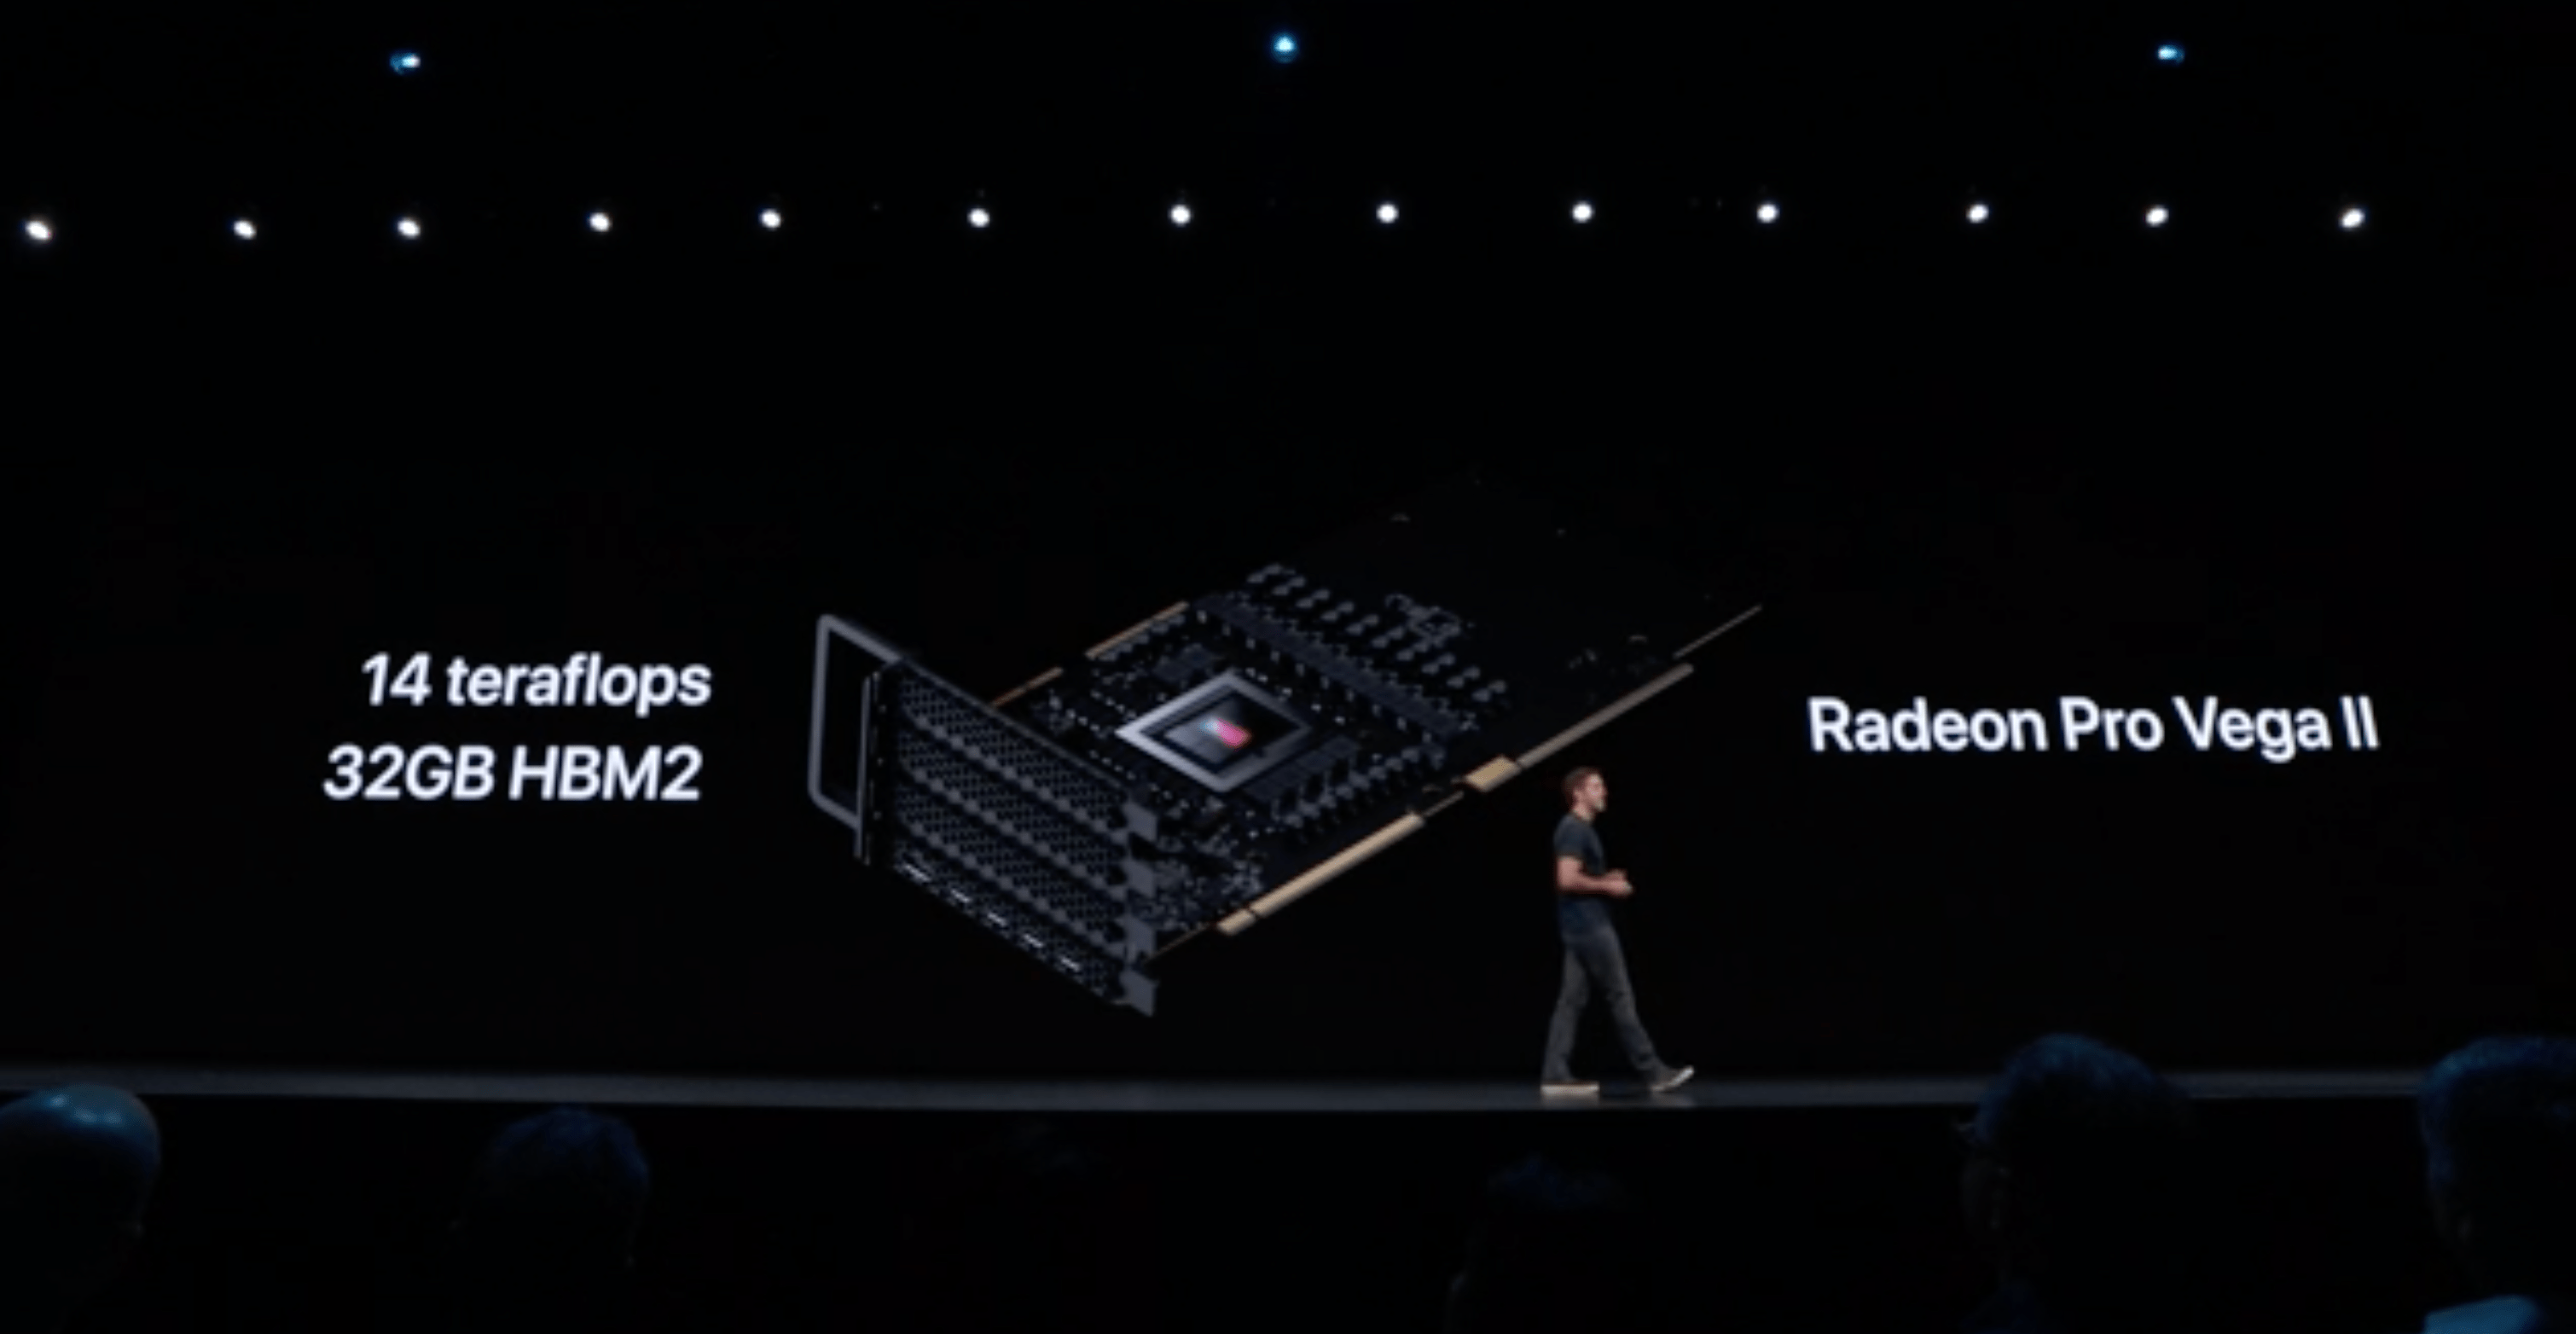 [WWDC19] Apple ra mắt
Mac Pro 2019 với thiết, cơ động hơn, cấu hình siêu mạnh, giá
từ 5999 USD